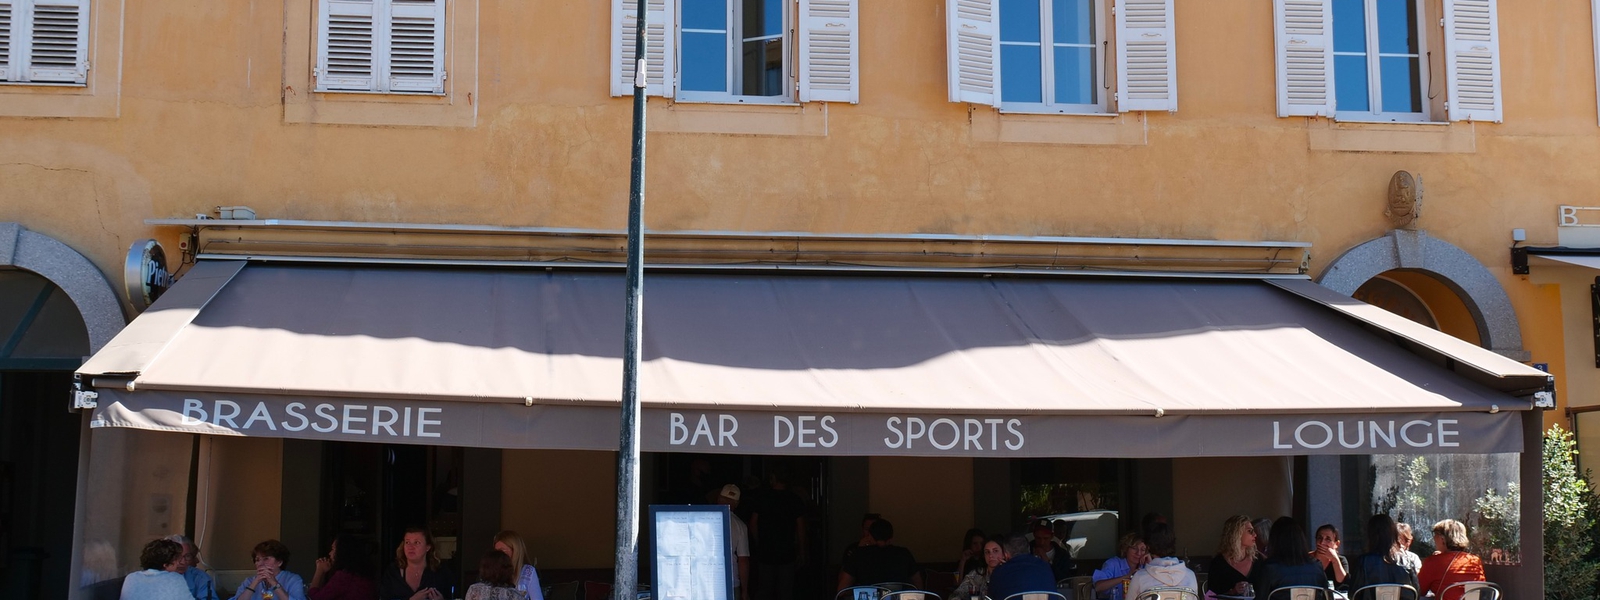 Bar des sports image header